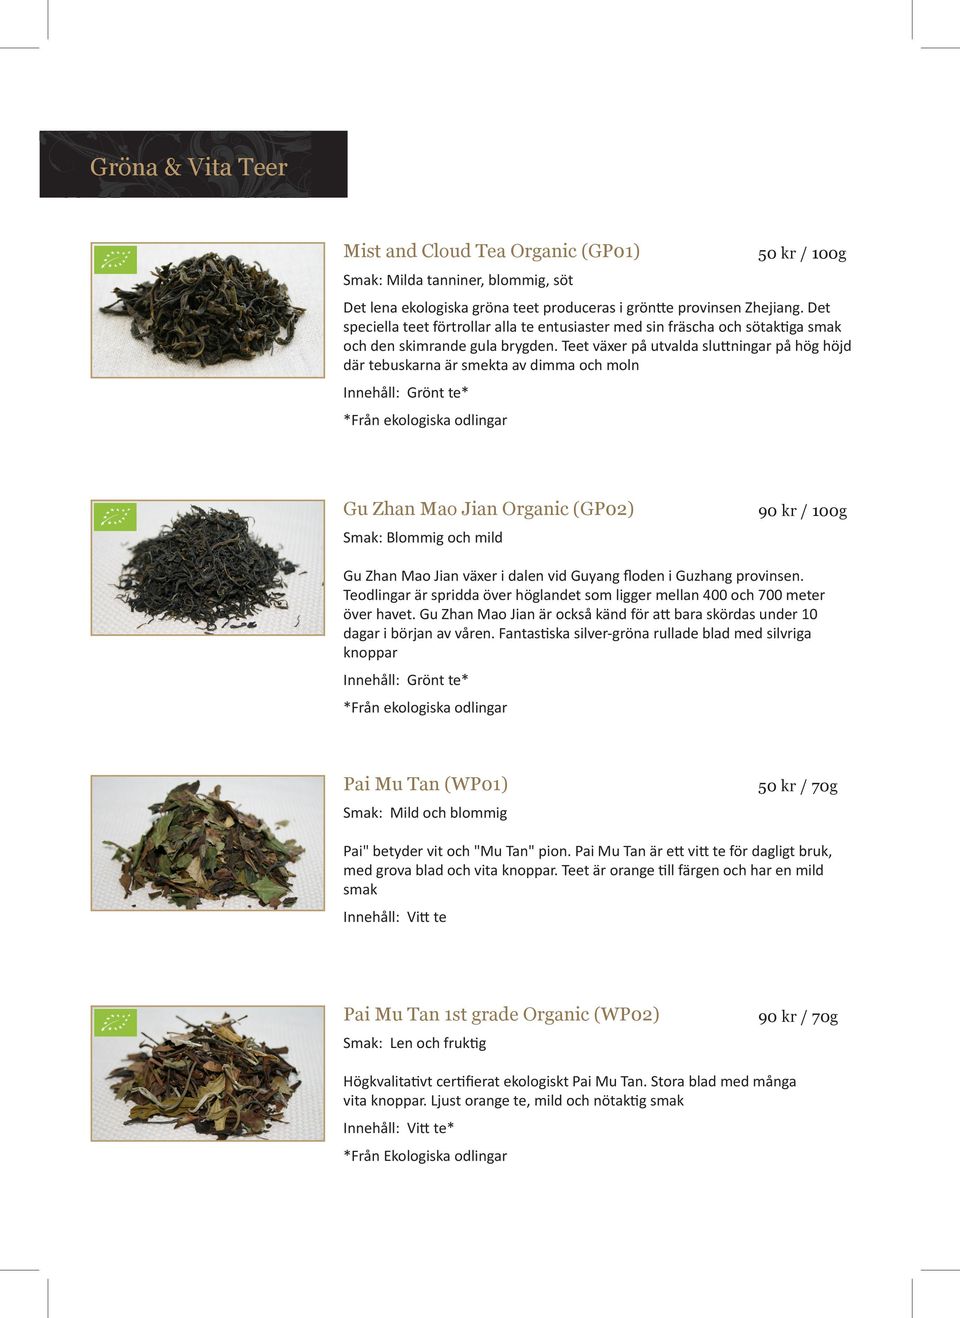 Teet växer på utvalda sluttningar på hög höjd där tebuskarna är smekta av dimma och moln Innehåll: Grönt te* *Från ekologiska odlingar Gu Zhan Mao Jian Organic (GP02) 90 kr / 100g Smak: Blommig och